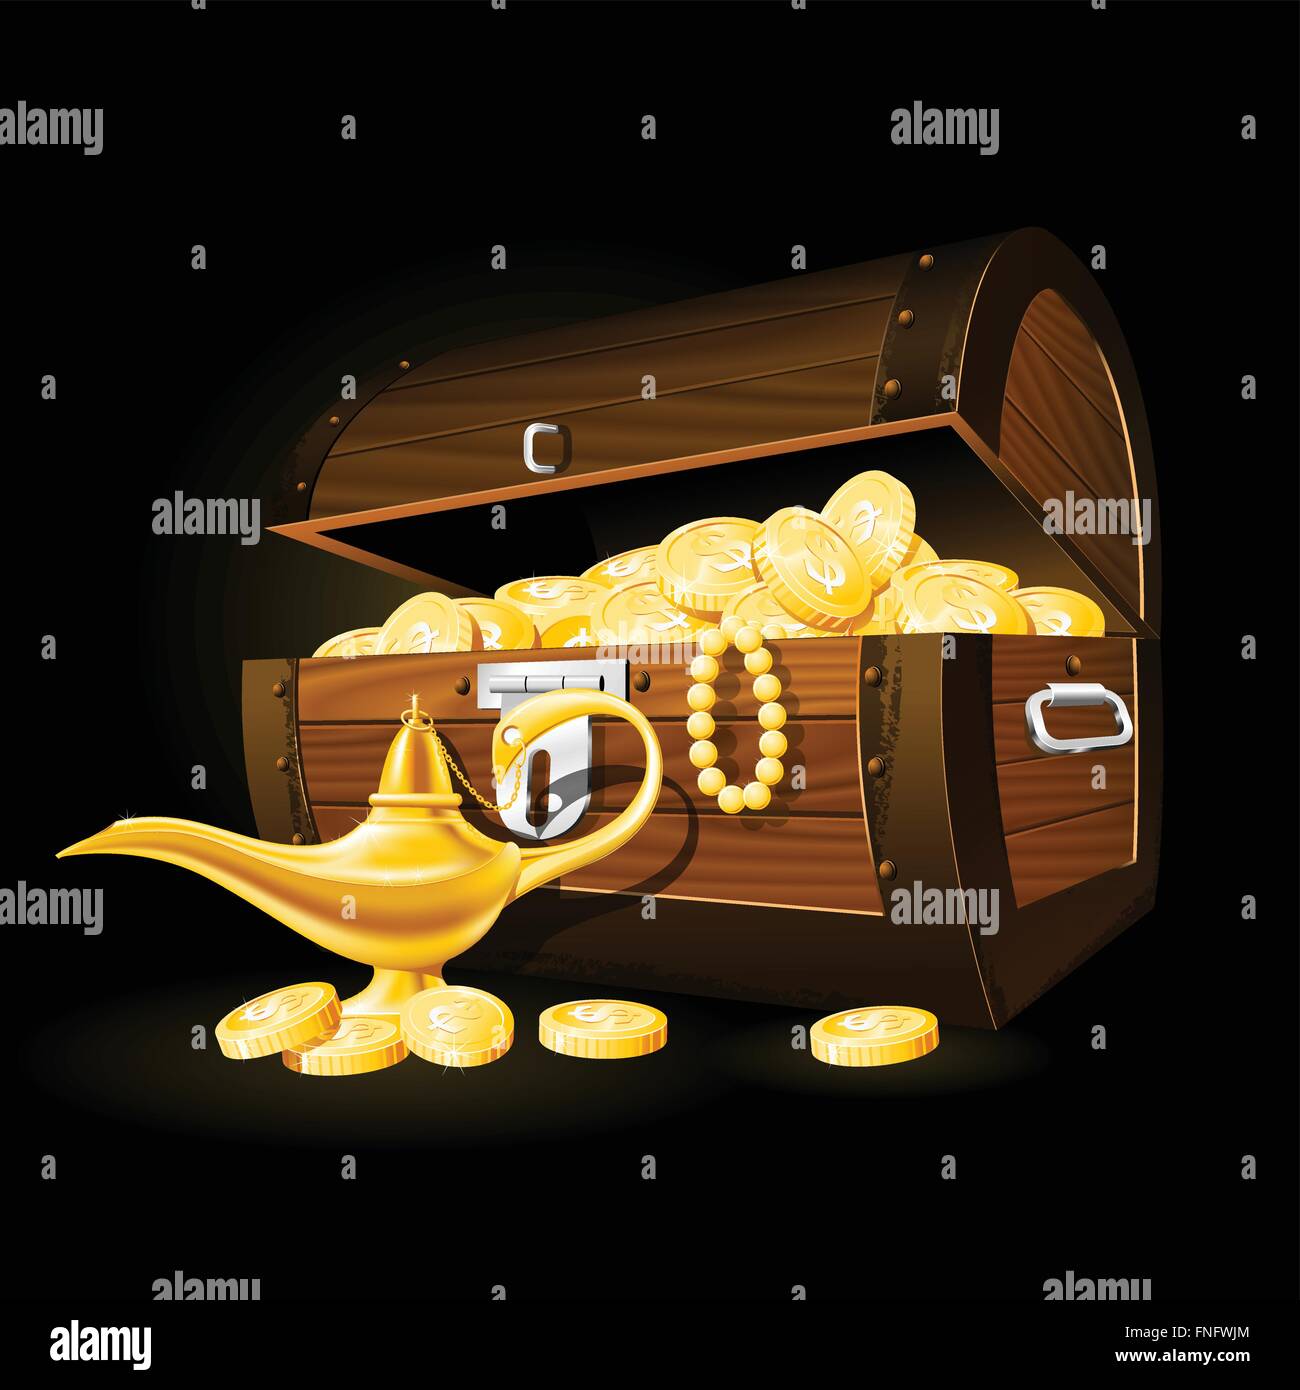 Schatztruhe von Münzen und Aladins Wunderlampe Stock Vektor